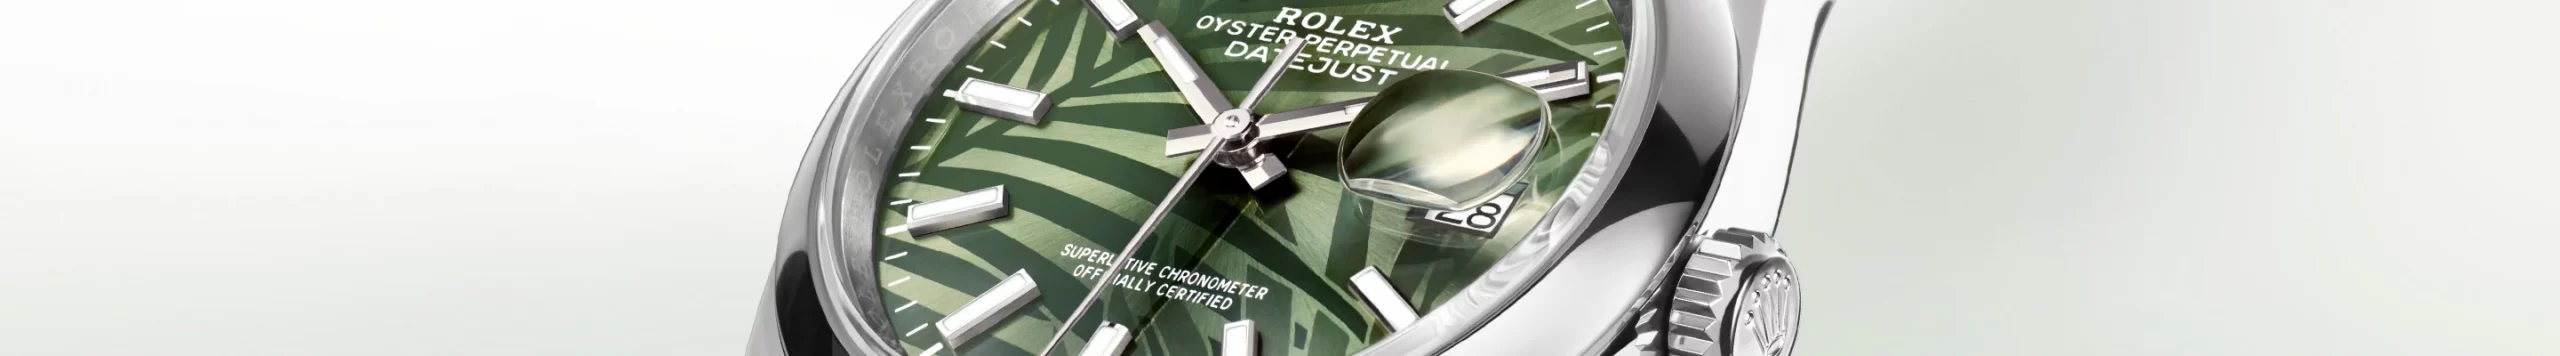 Rolex Official Retailer - Pendulum